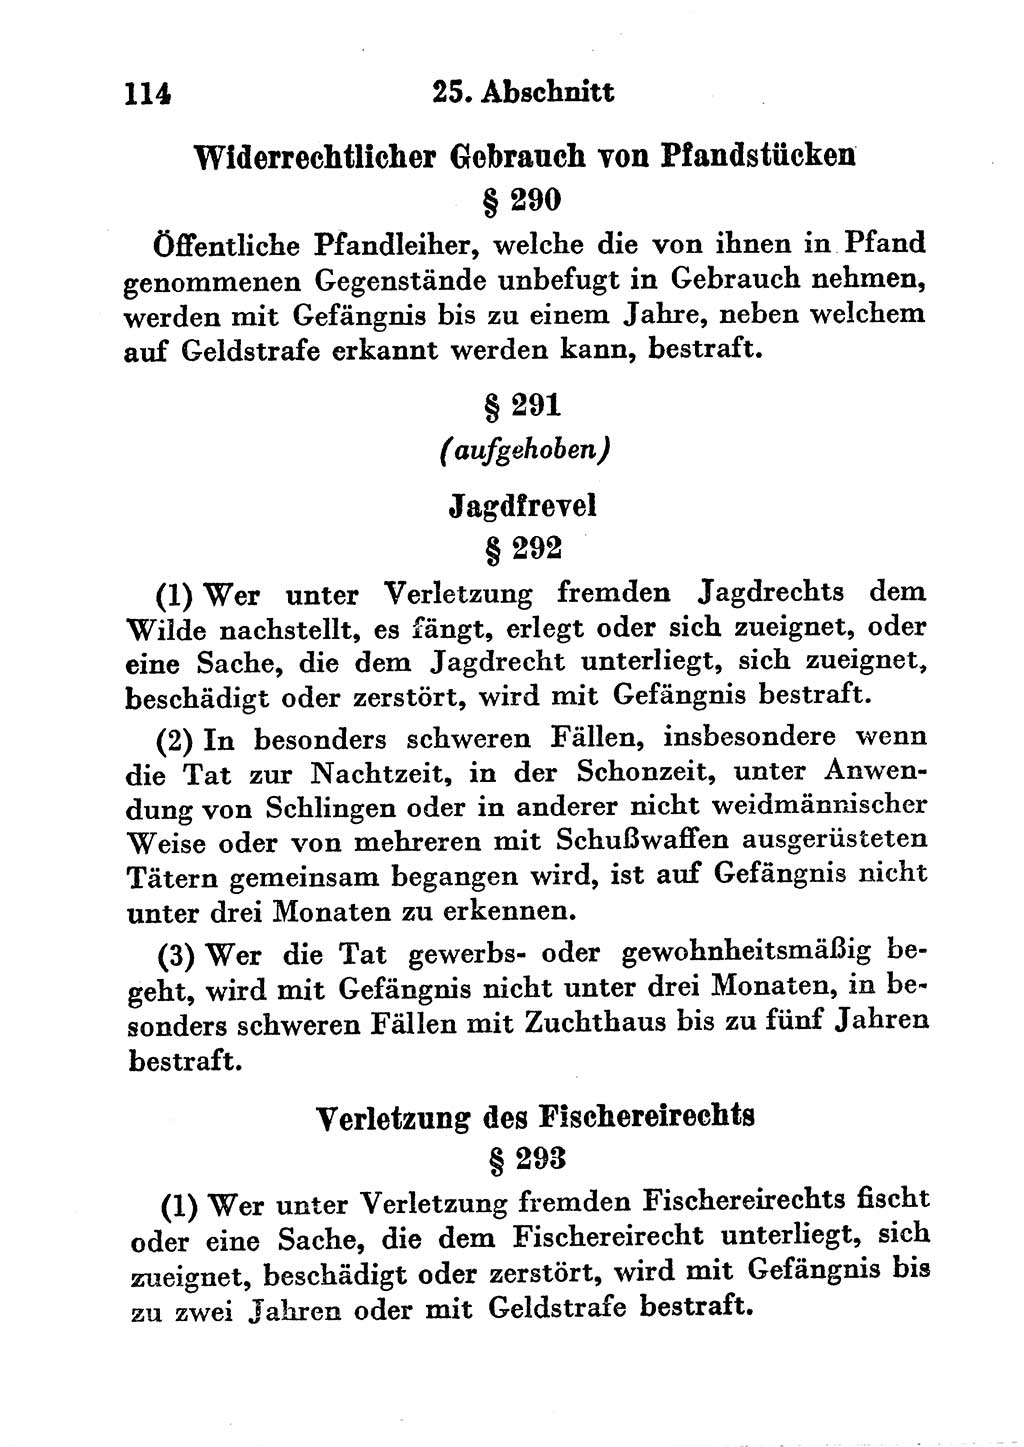 Strafgesetzbuch (StGB) und andere Strafgesetze [Deutsche Demokratische Republik (DDR)] 1956, Seite 114 (StGB Strafges. DDR 1956, S. 114)